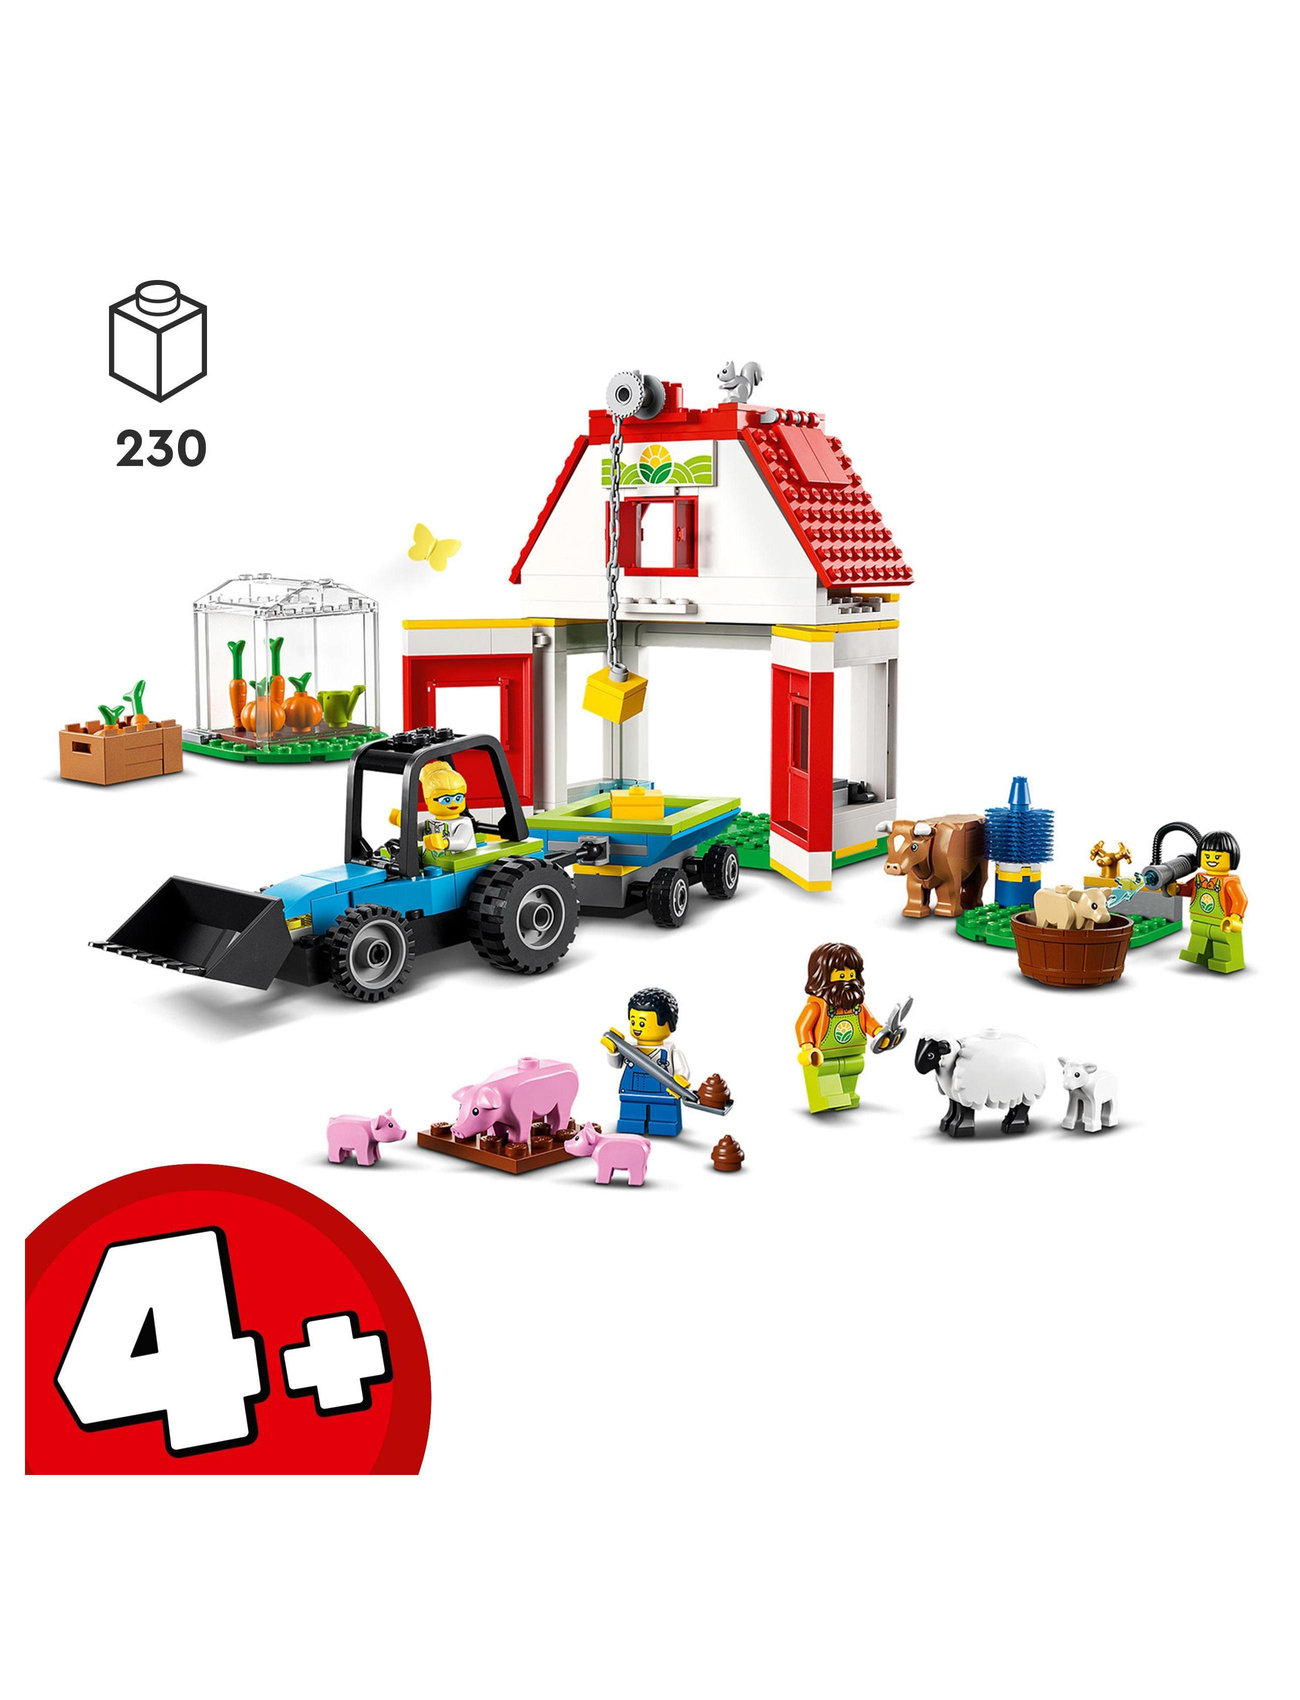 LEGO Barn & Farm Animals Set With Tractor Toy - LEGO® toys - Boozt.com